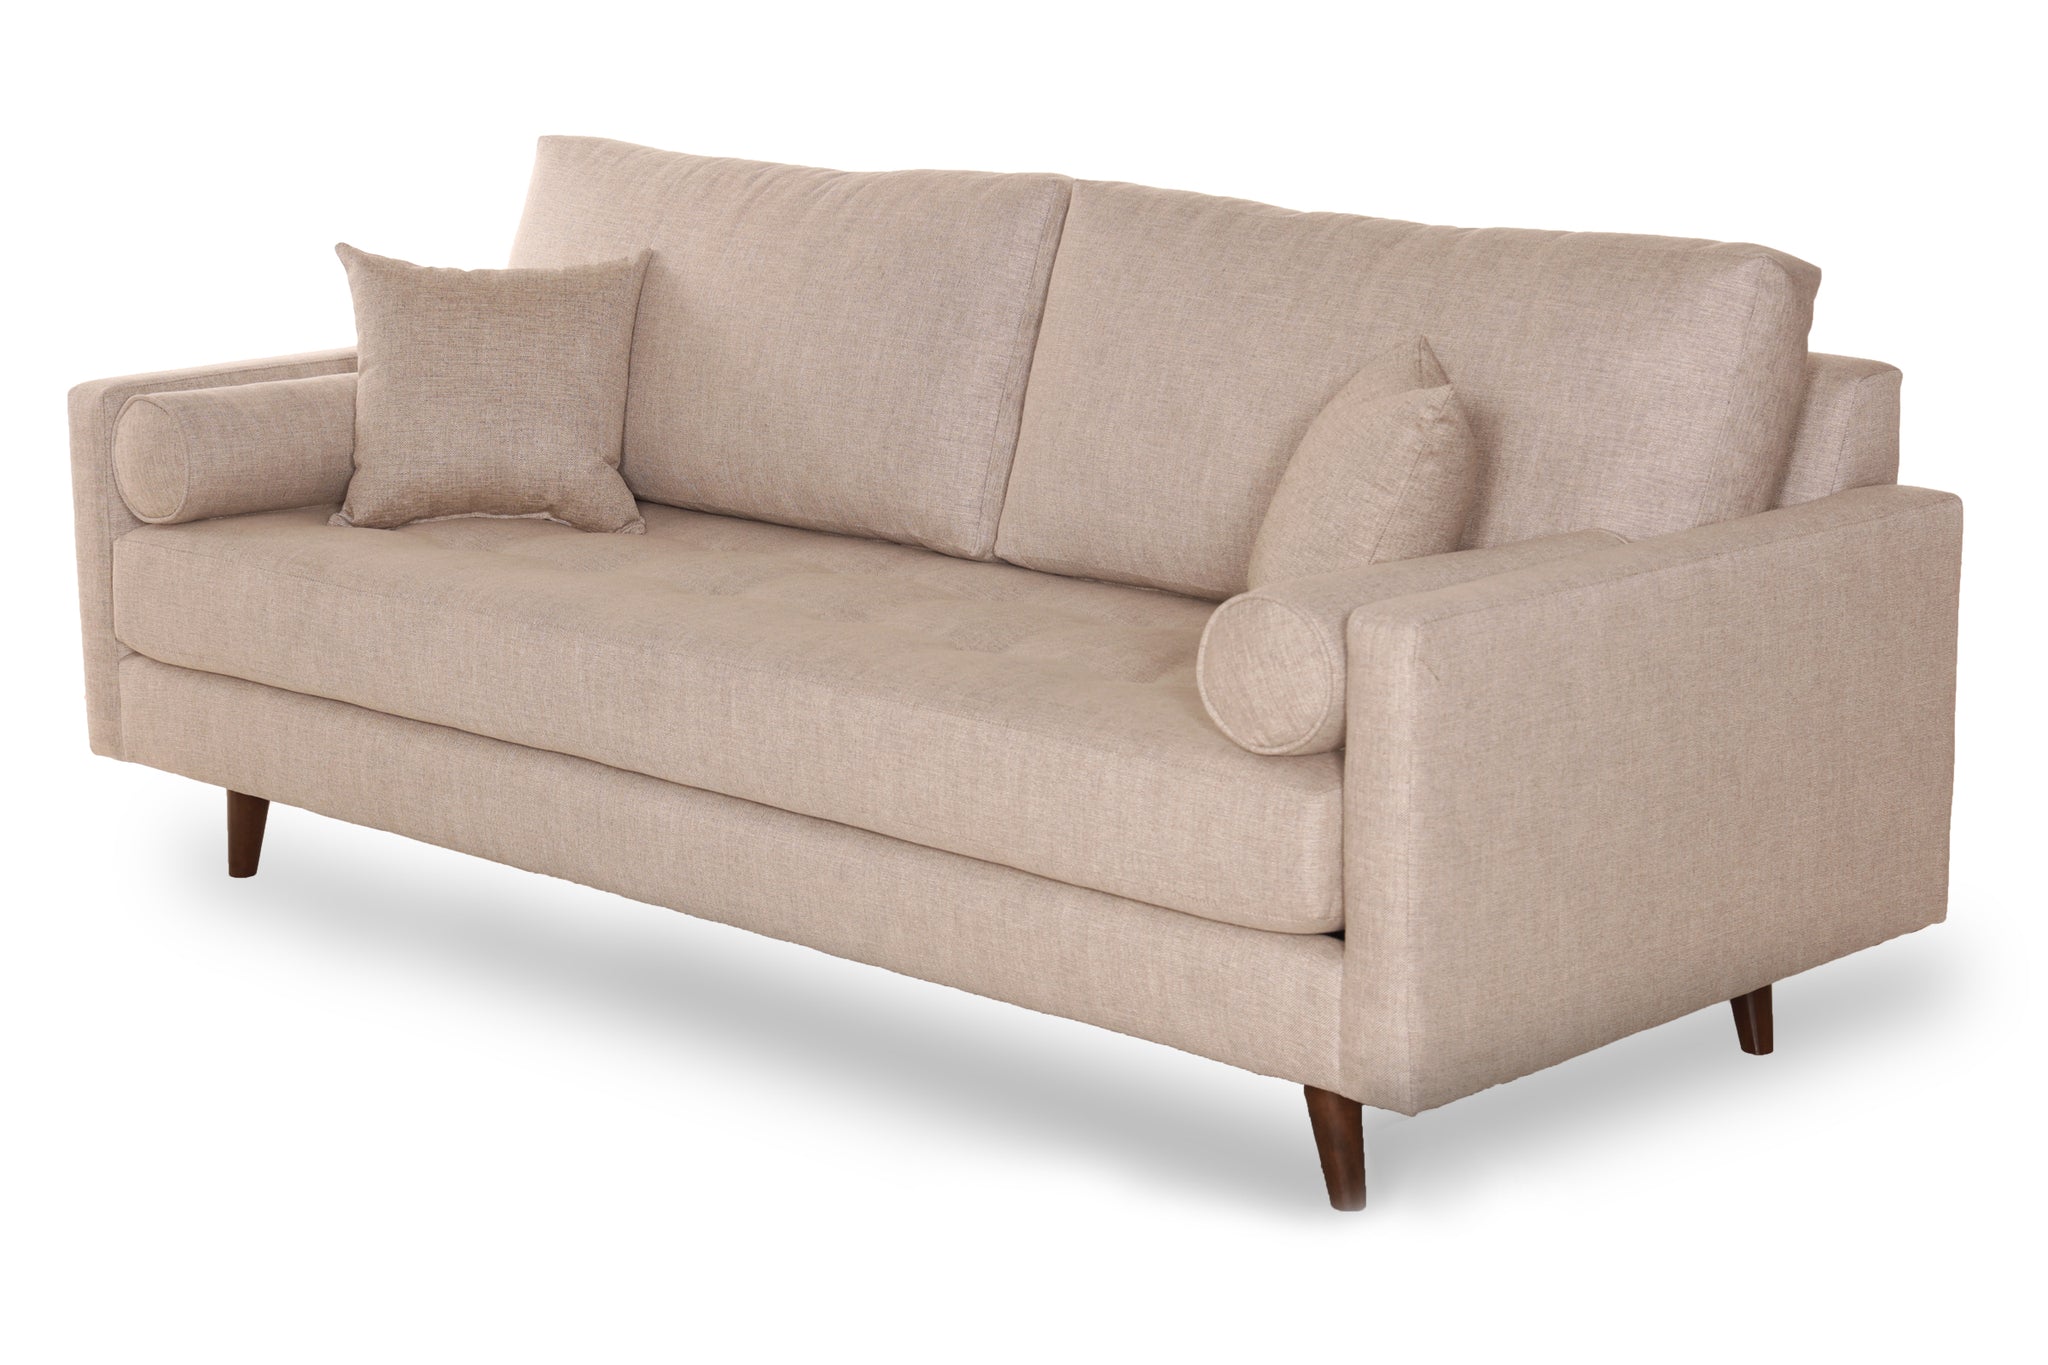 Star Sofa- Customizable